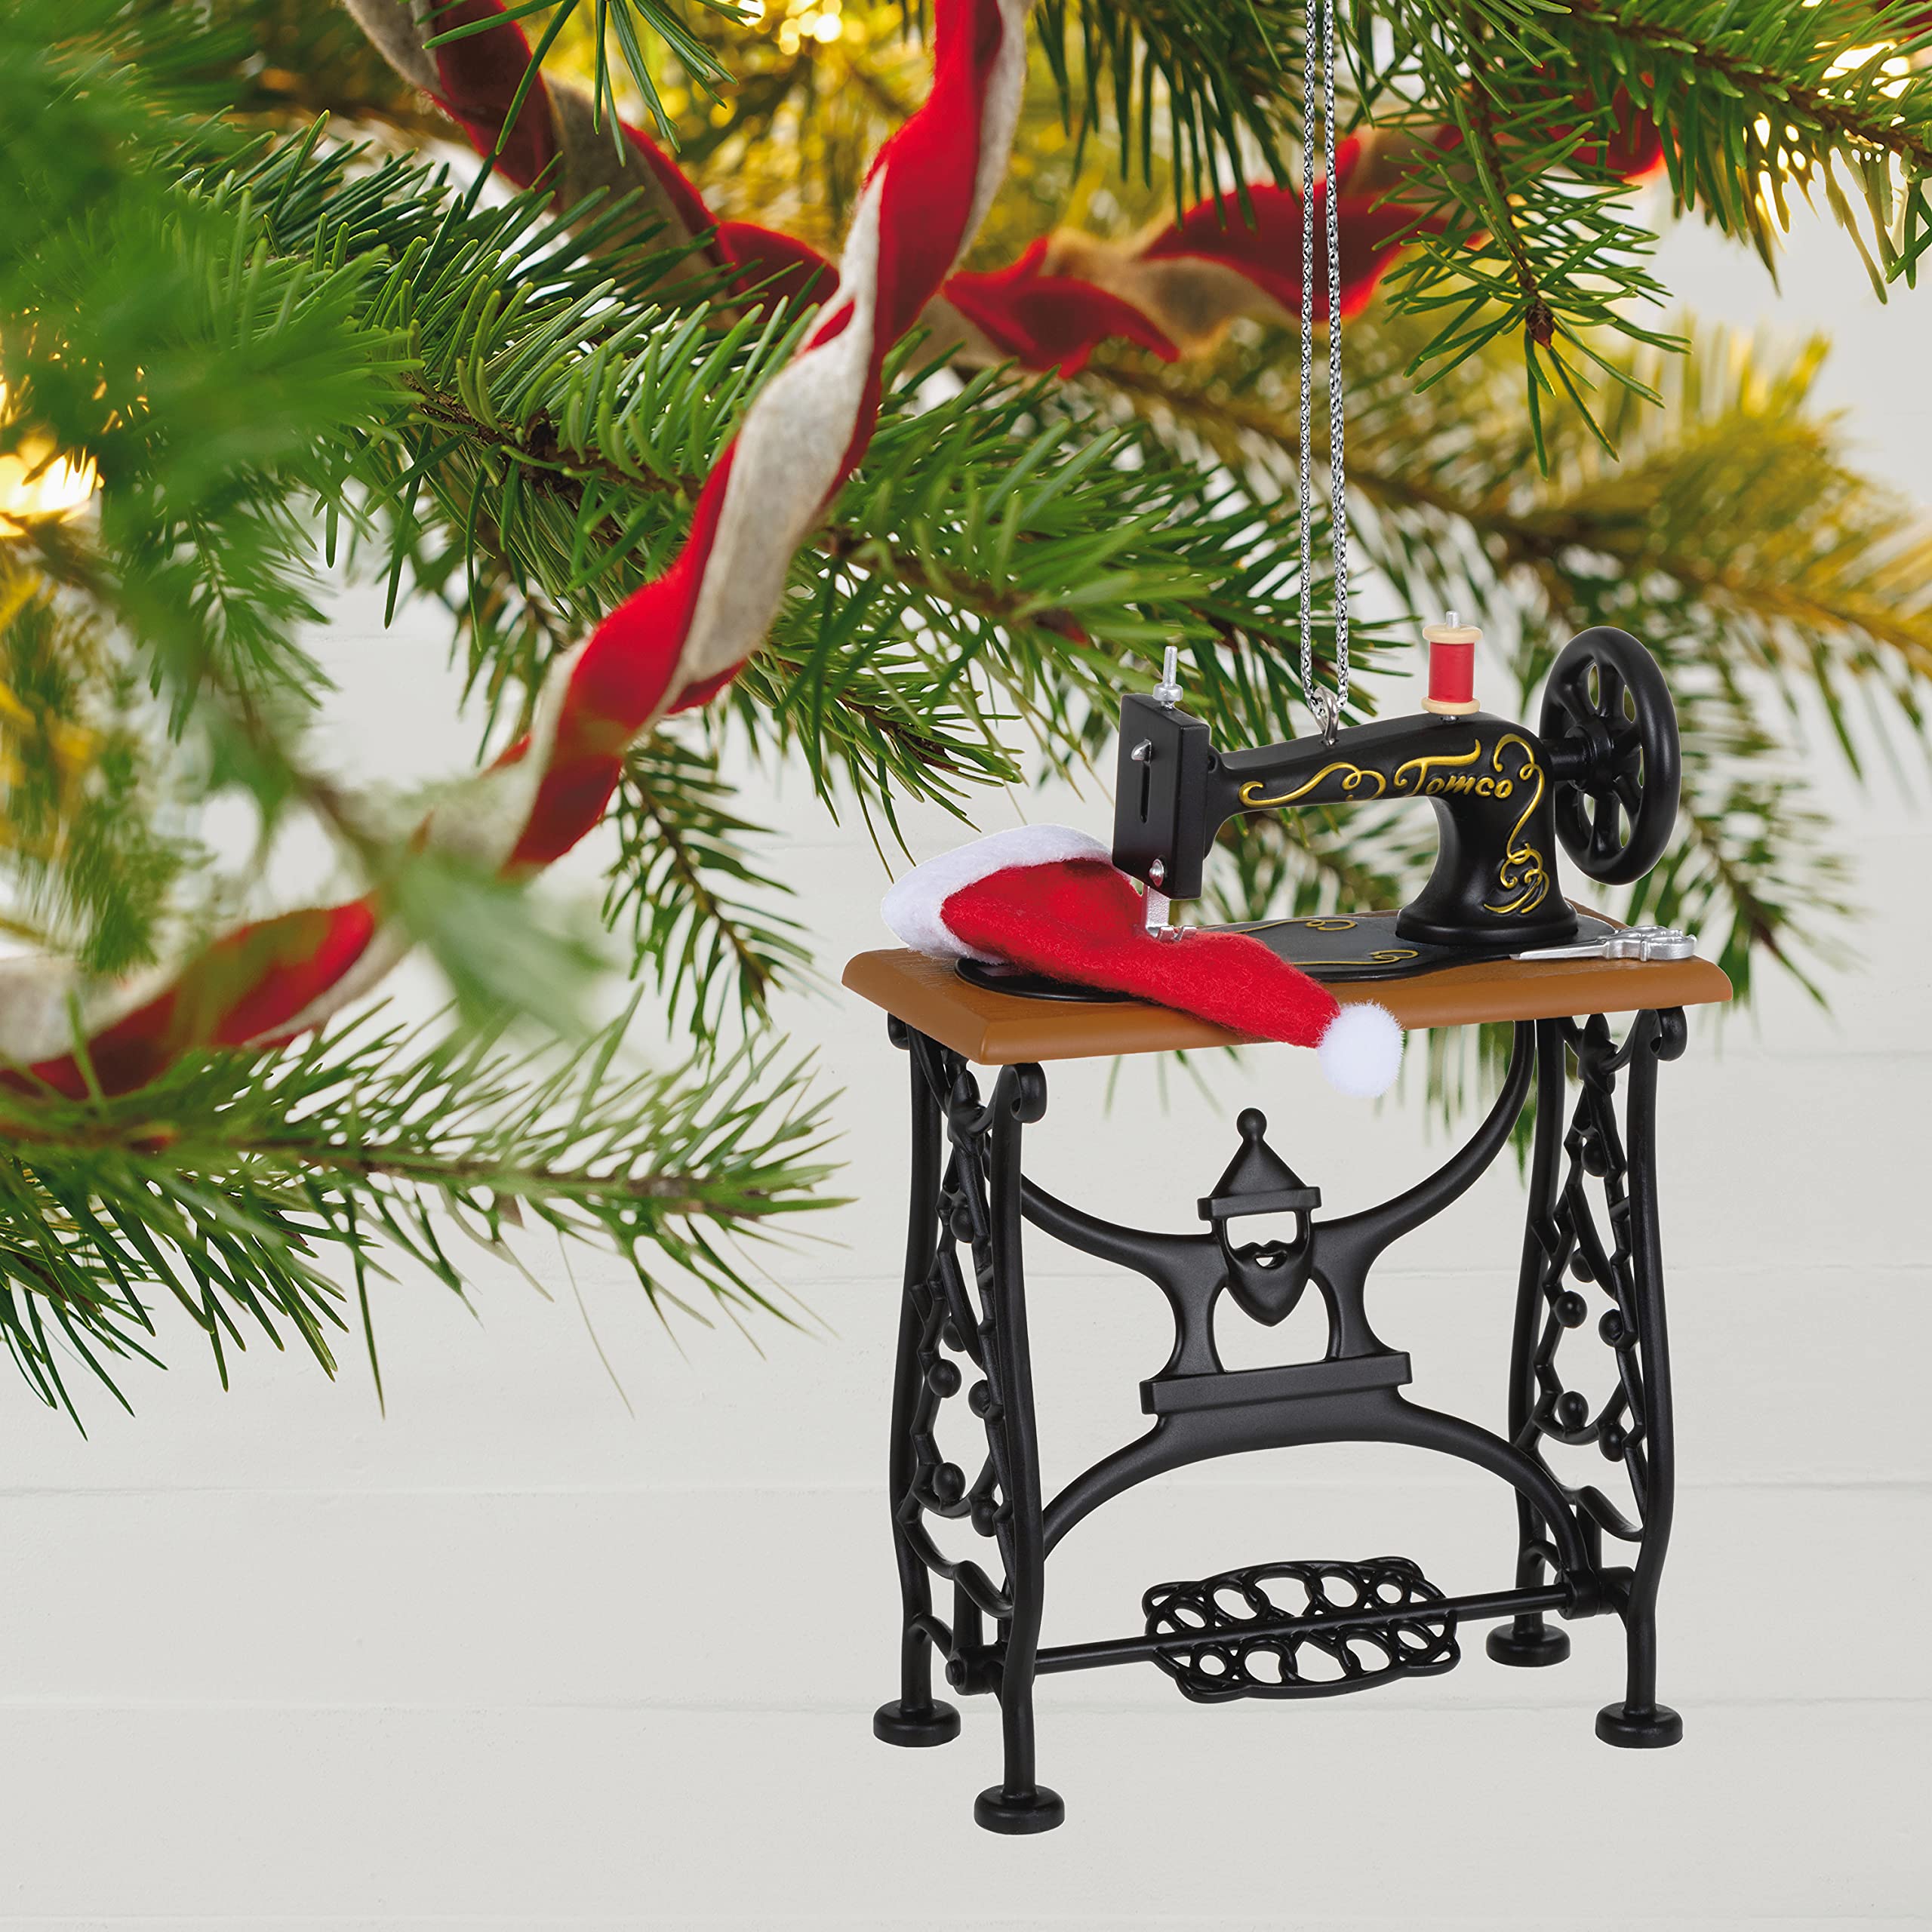 Hallmark Keepsake Christmas Ornament 2021, Sew Vintage Sewing Machine